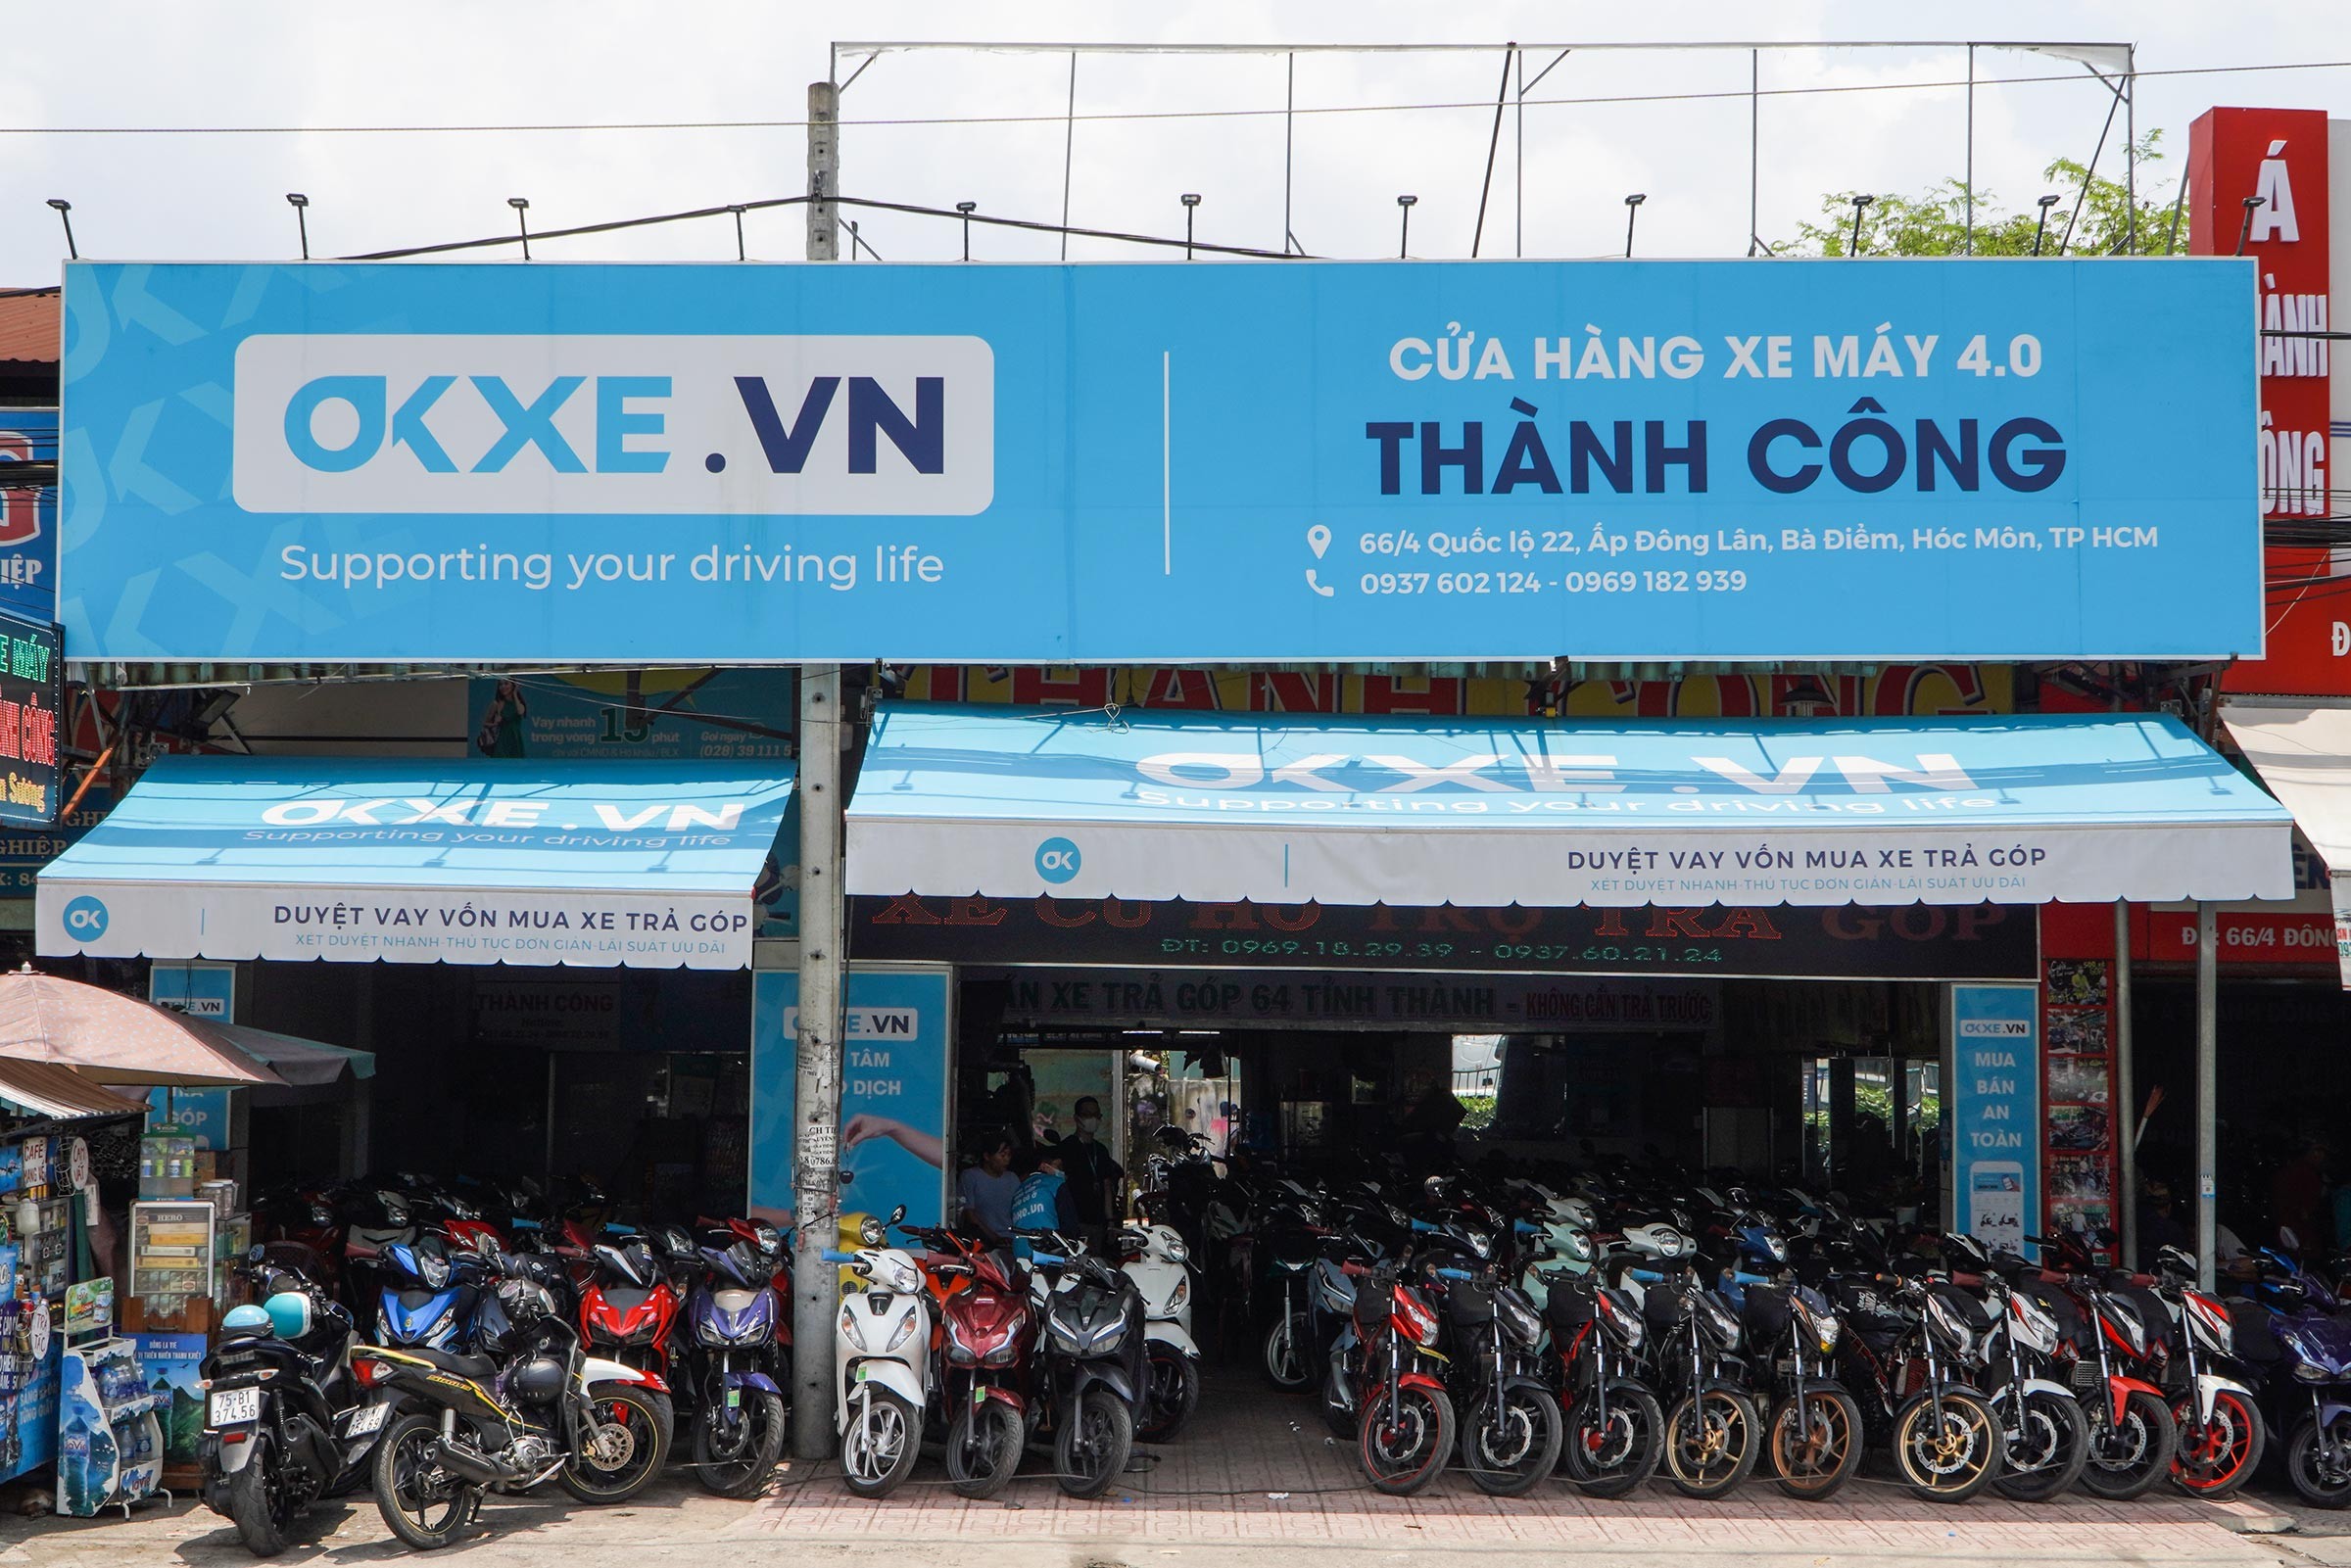 Xu hướng mua bán xe máy cũ online tại Việt Nam phát triển ra sao?